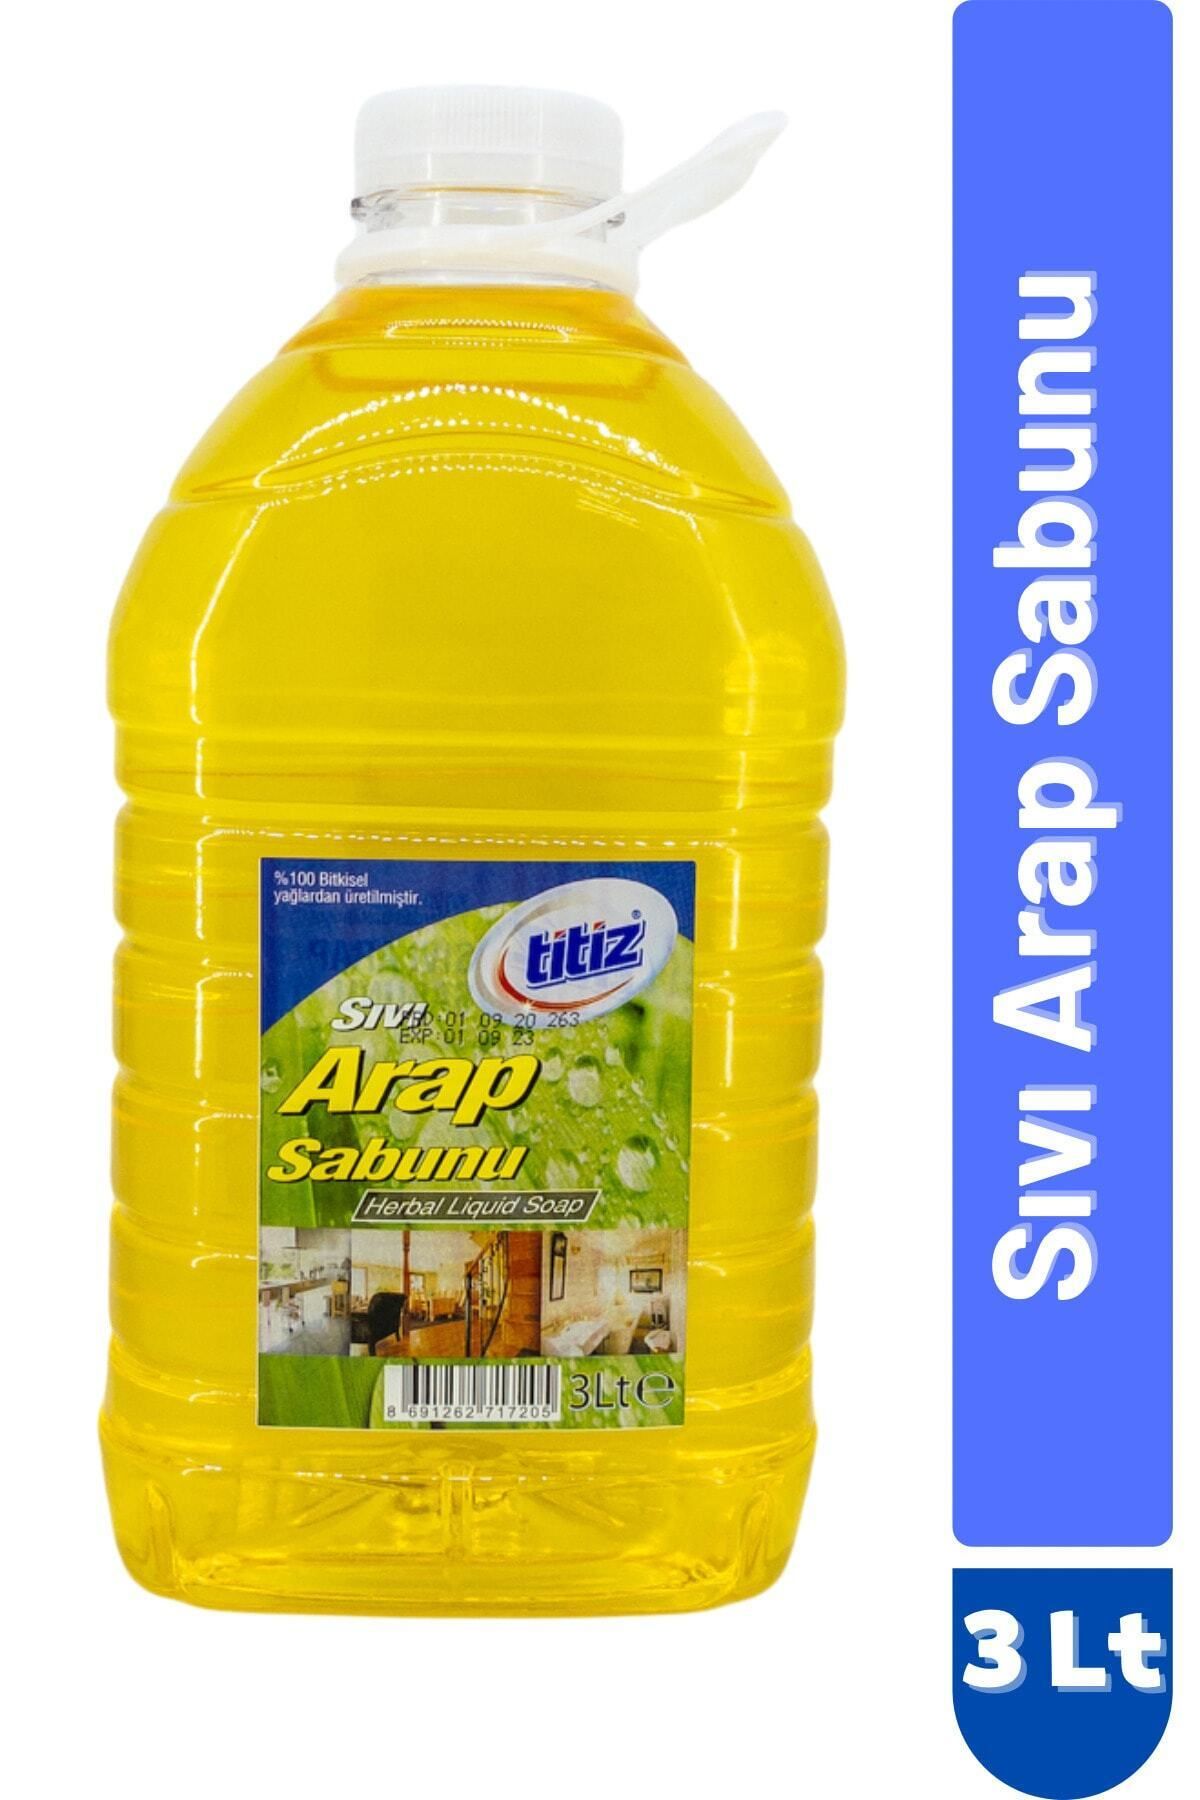 Titiz Sıvı Arap Sabunu Tüm Yüzeyler Için Doğal Temizlik 3000ml